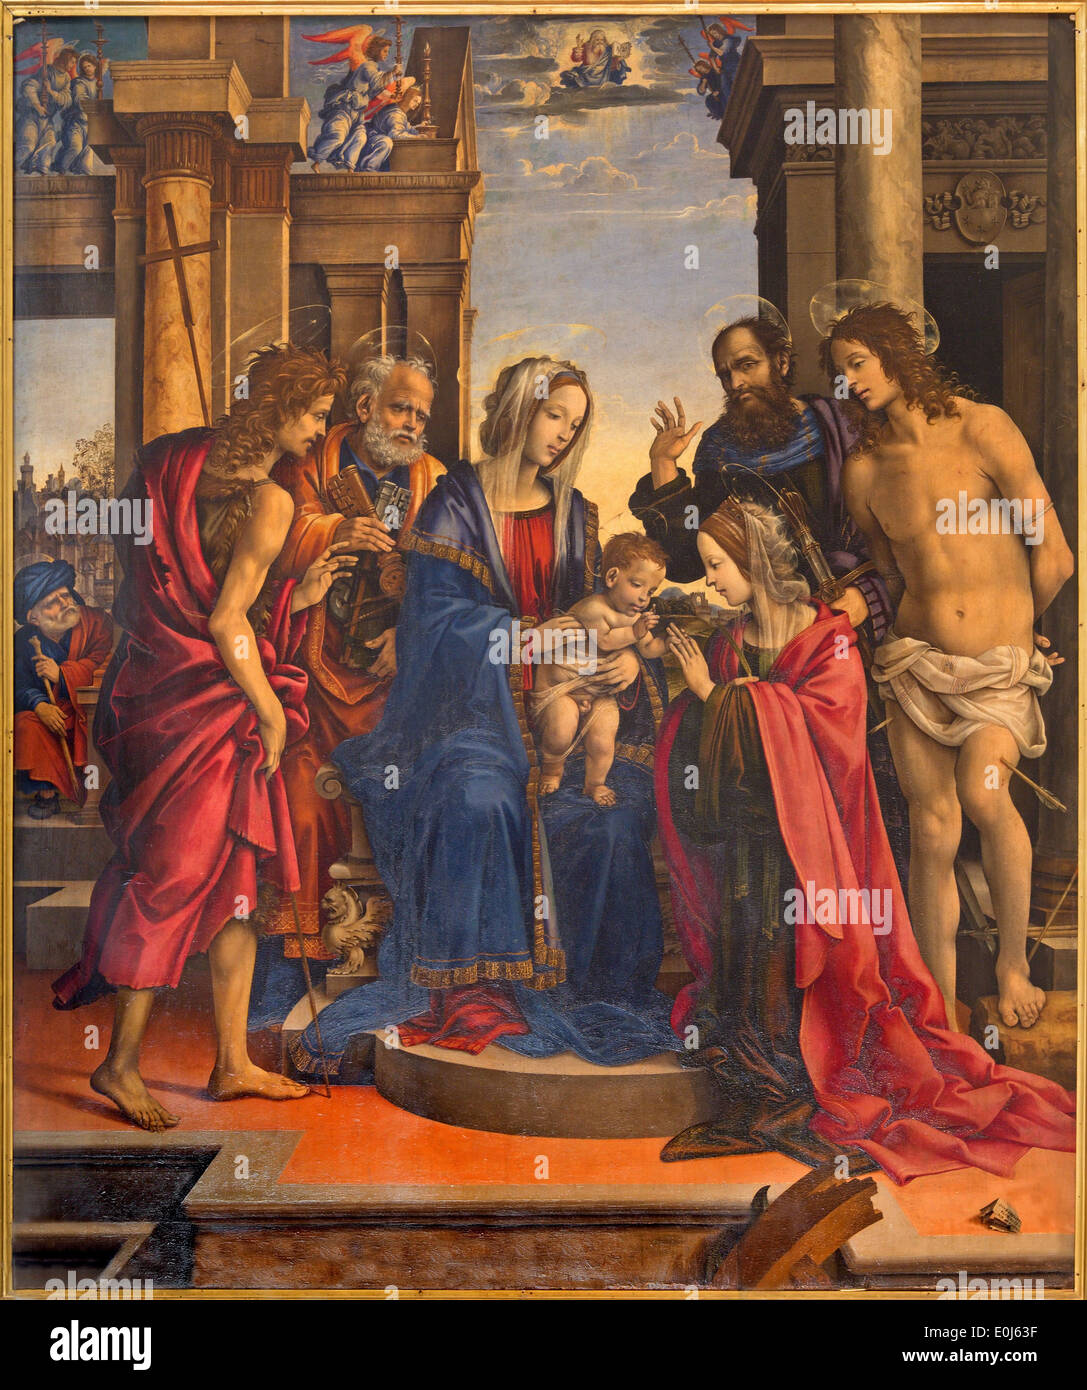 Bologna - La Vierge et les saints de Filippino Lippi (1501) à l'église Chiesa di San Domneico - Église de Saint Dominique. Banque D'Images